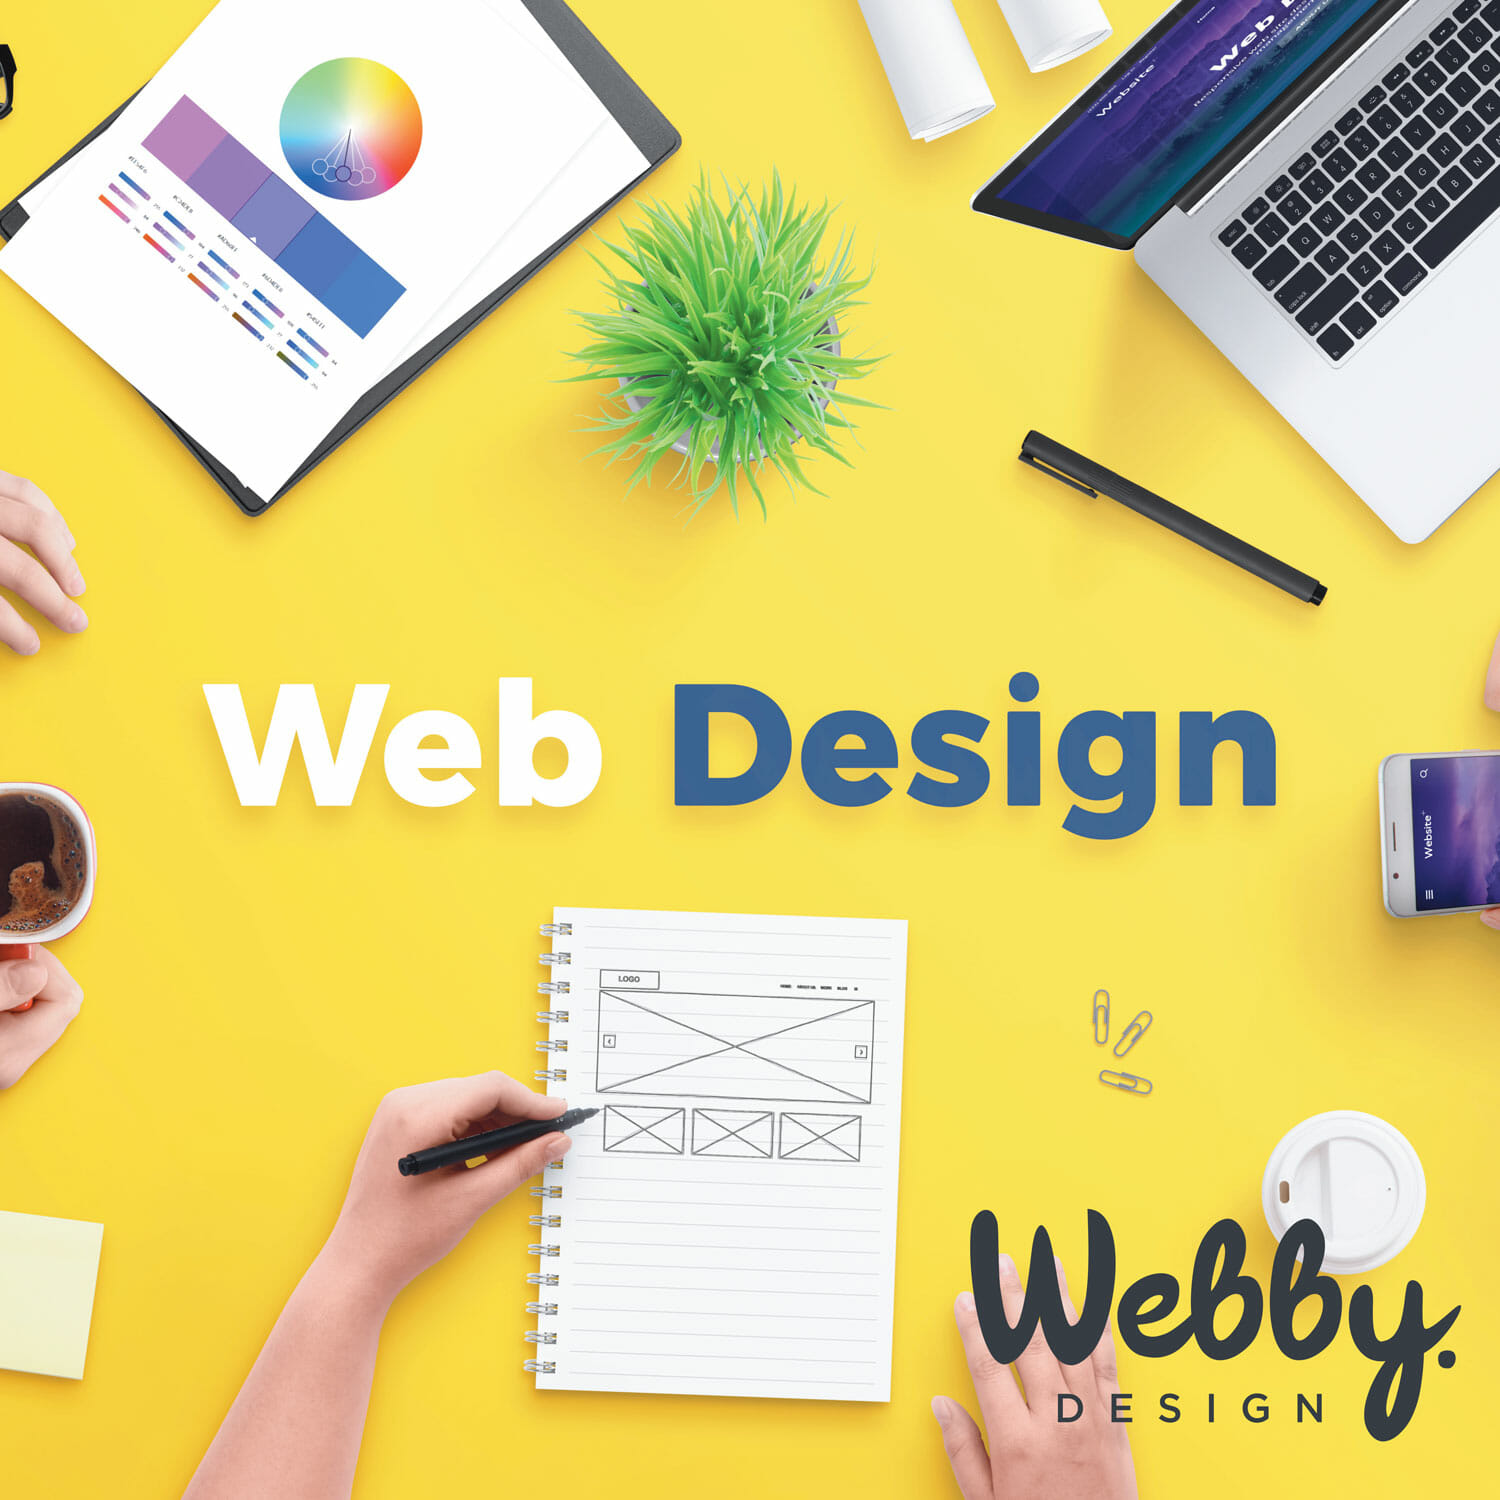 Webby.Design image promoting Website Design Services